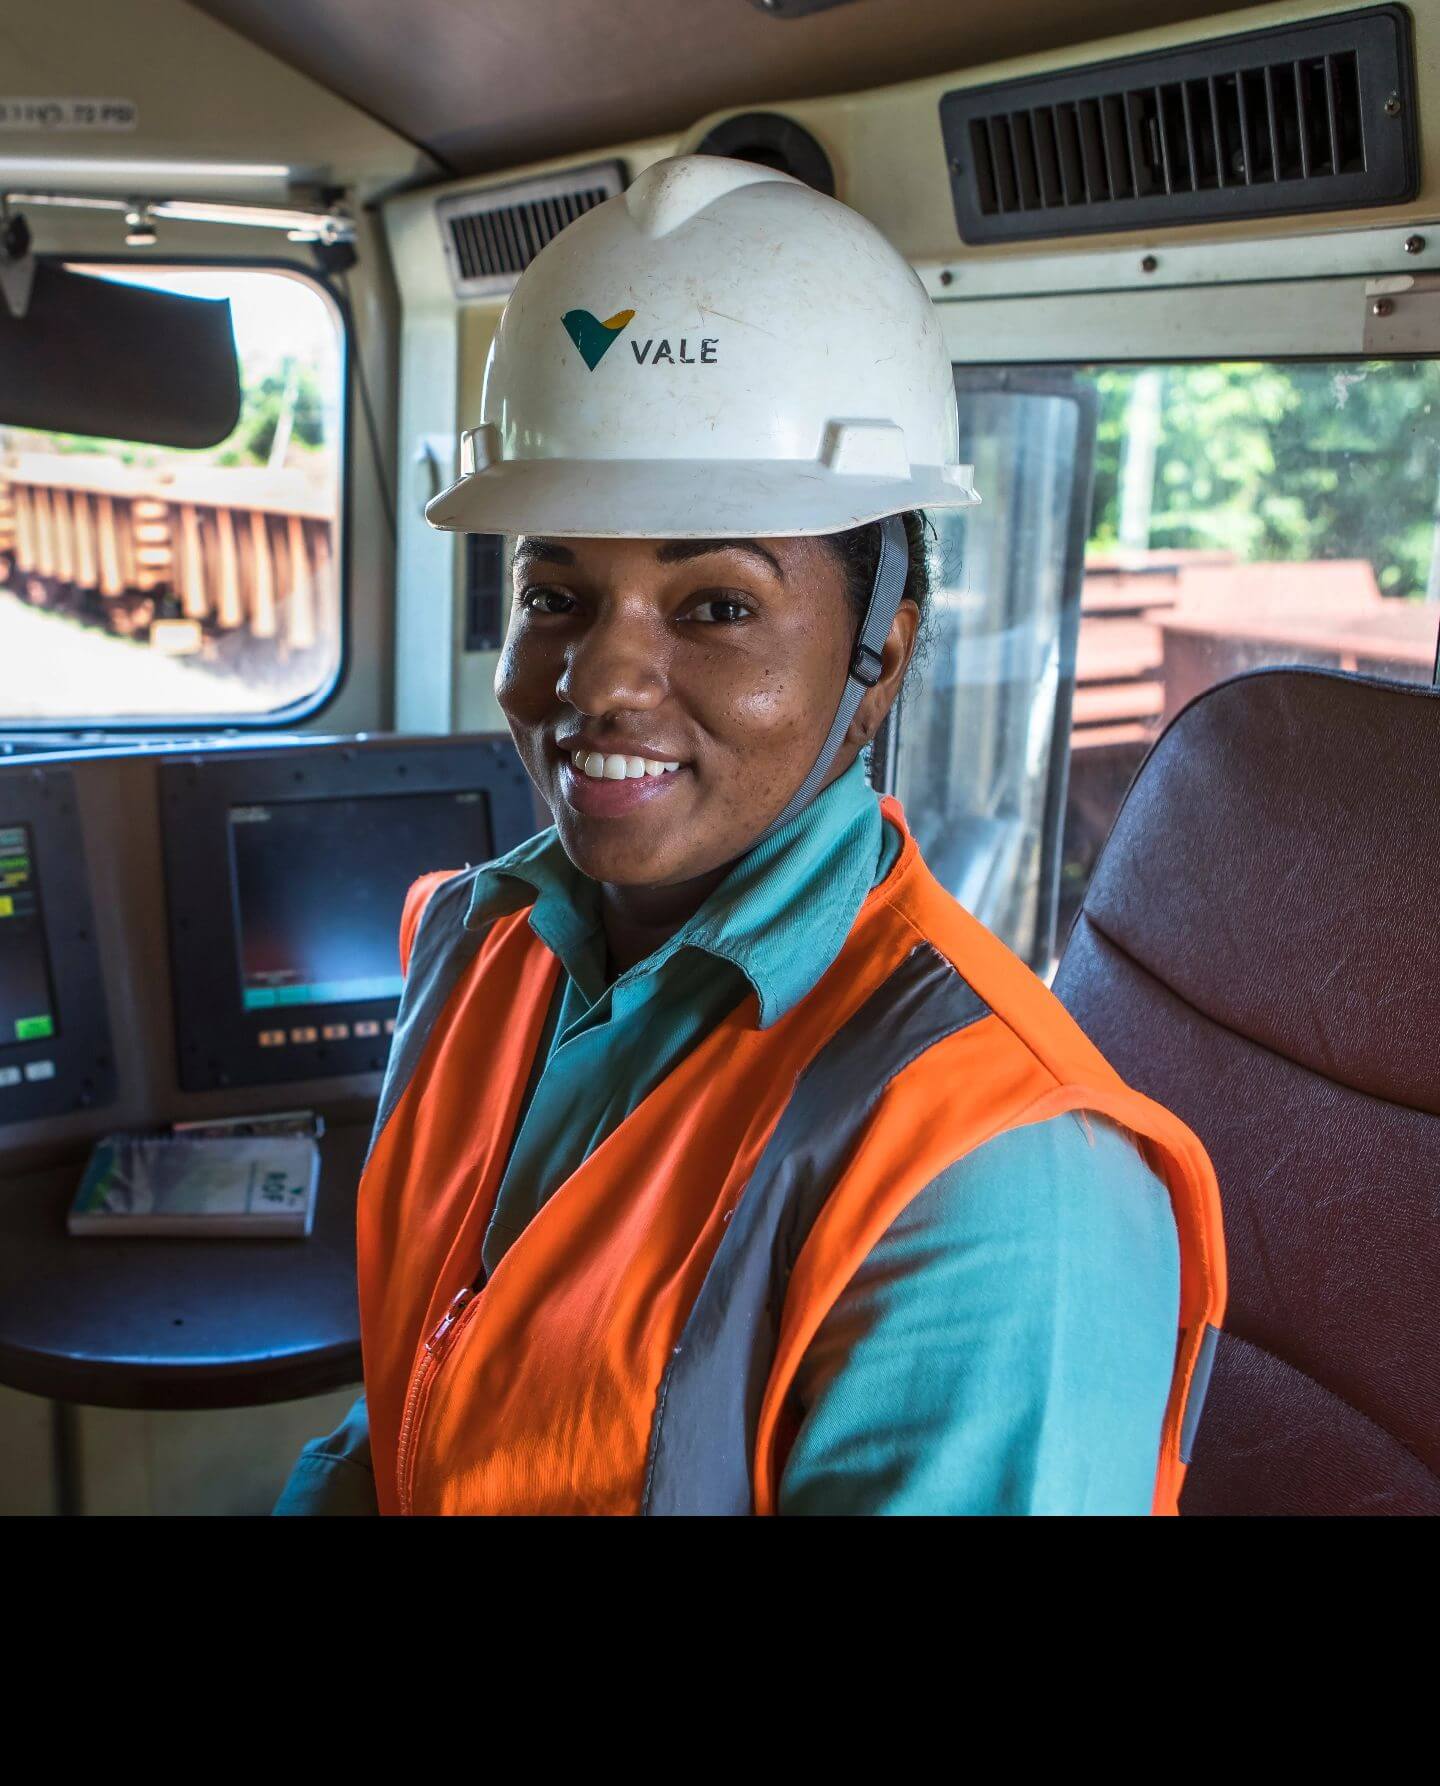 Mulher negra sorrindo dentro de um veículo. Ela usa uniforme verde da Vale, colete laranja e capacete branco com logotipo da empresa.